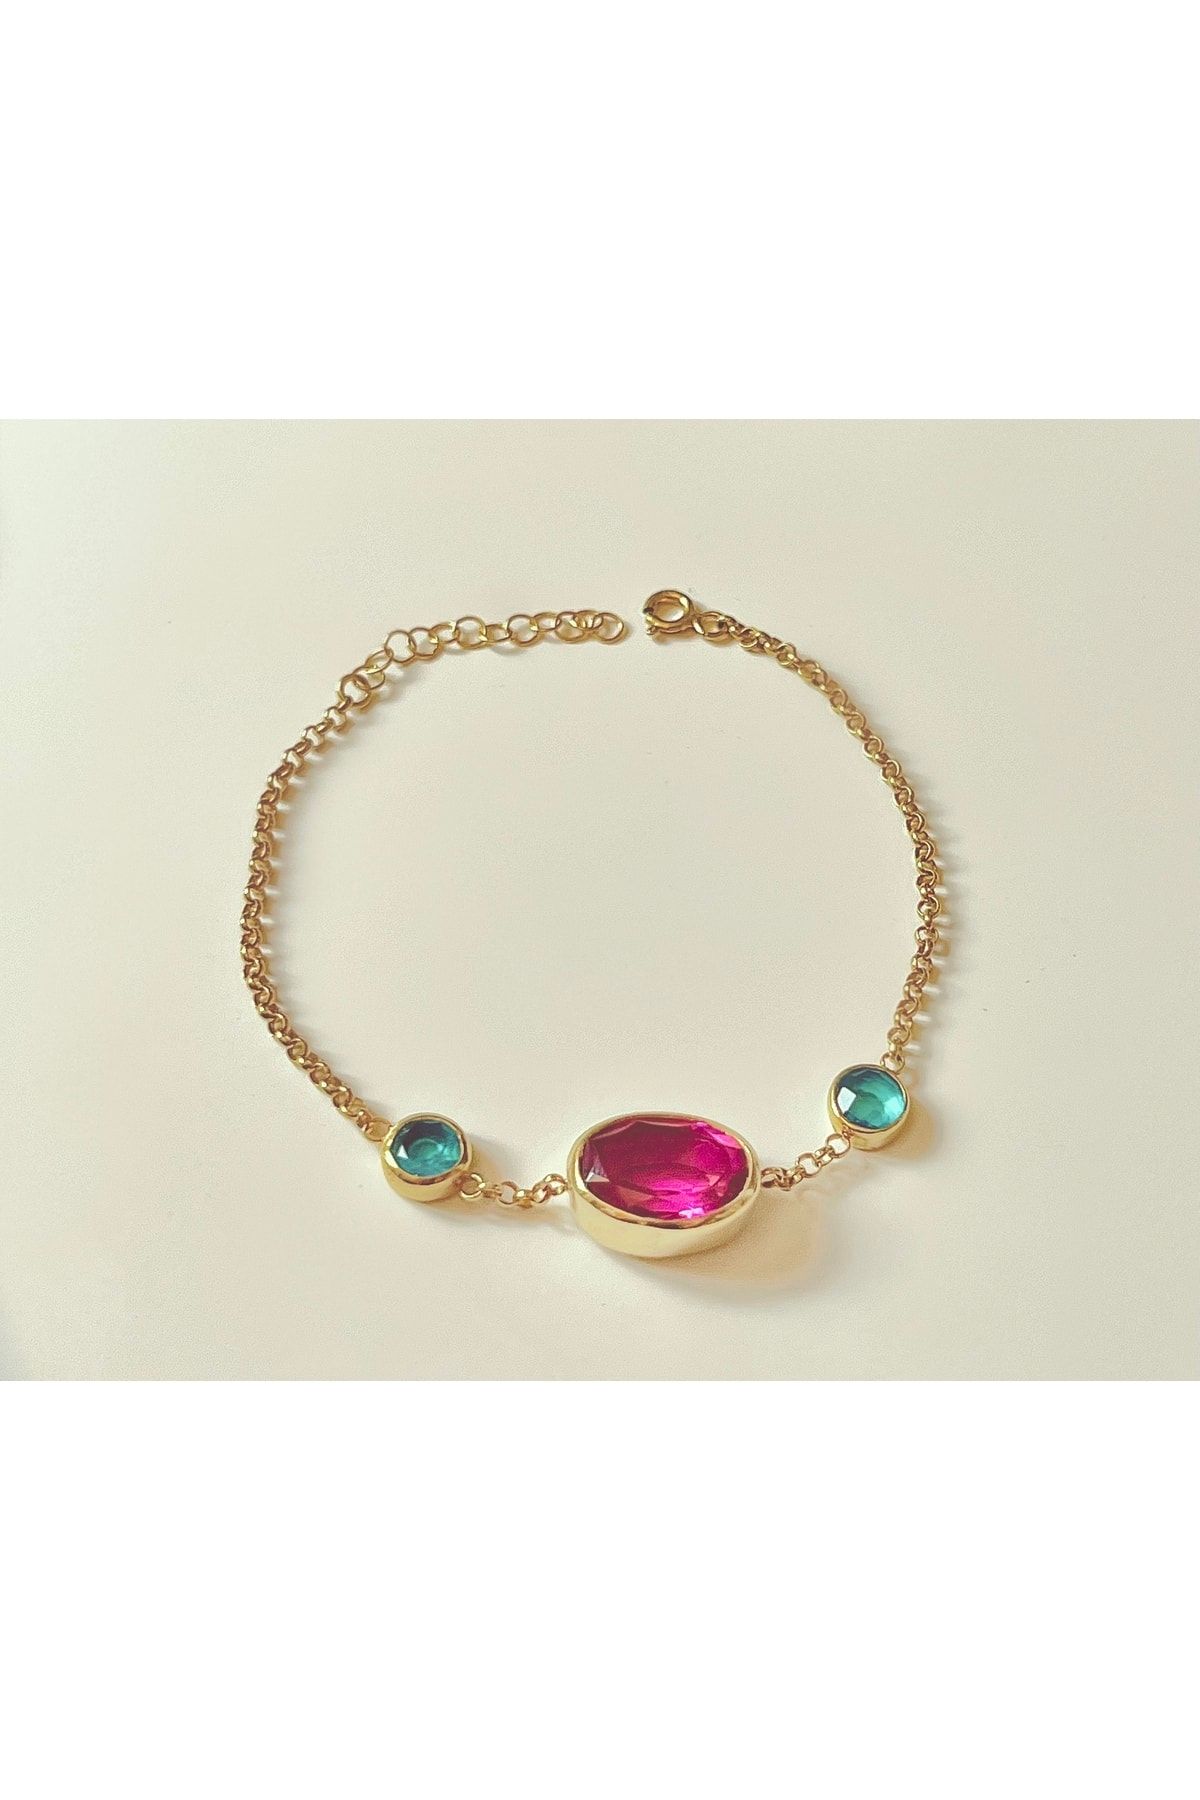 LALIMA JEWELRY Blue And Pink Doublet Quartz Bracelet - La’lima Gemstones Selection - Kuvars Bileklik